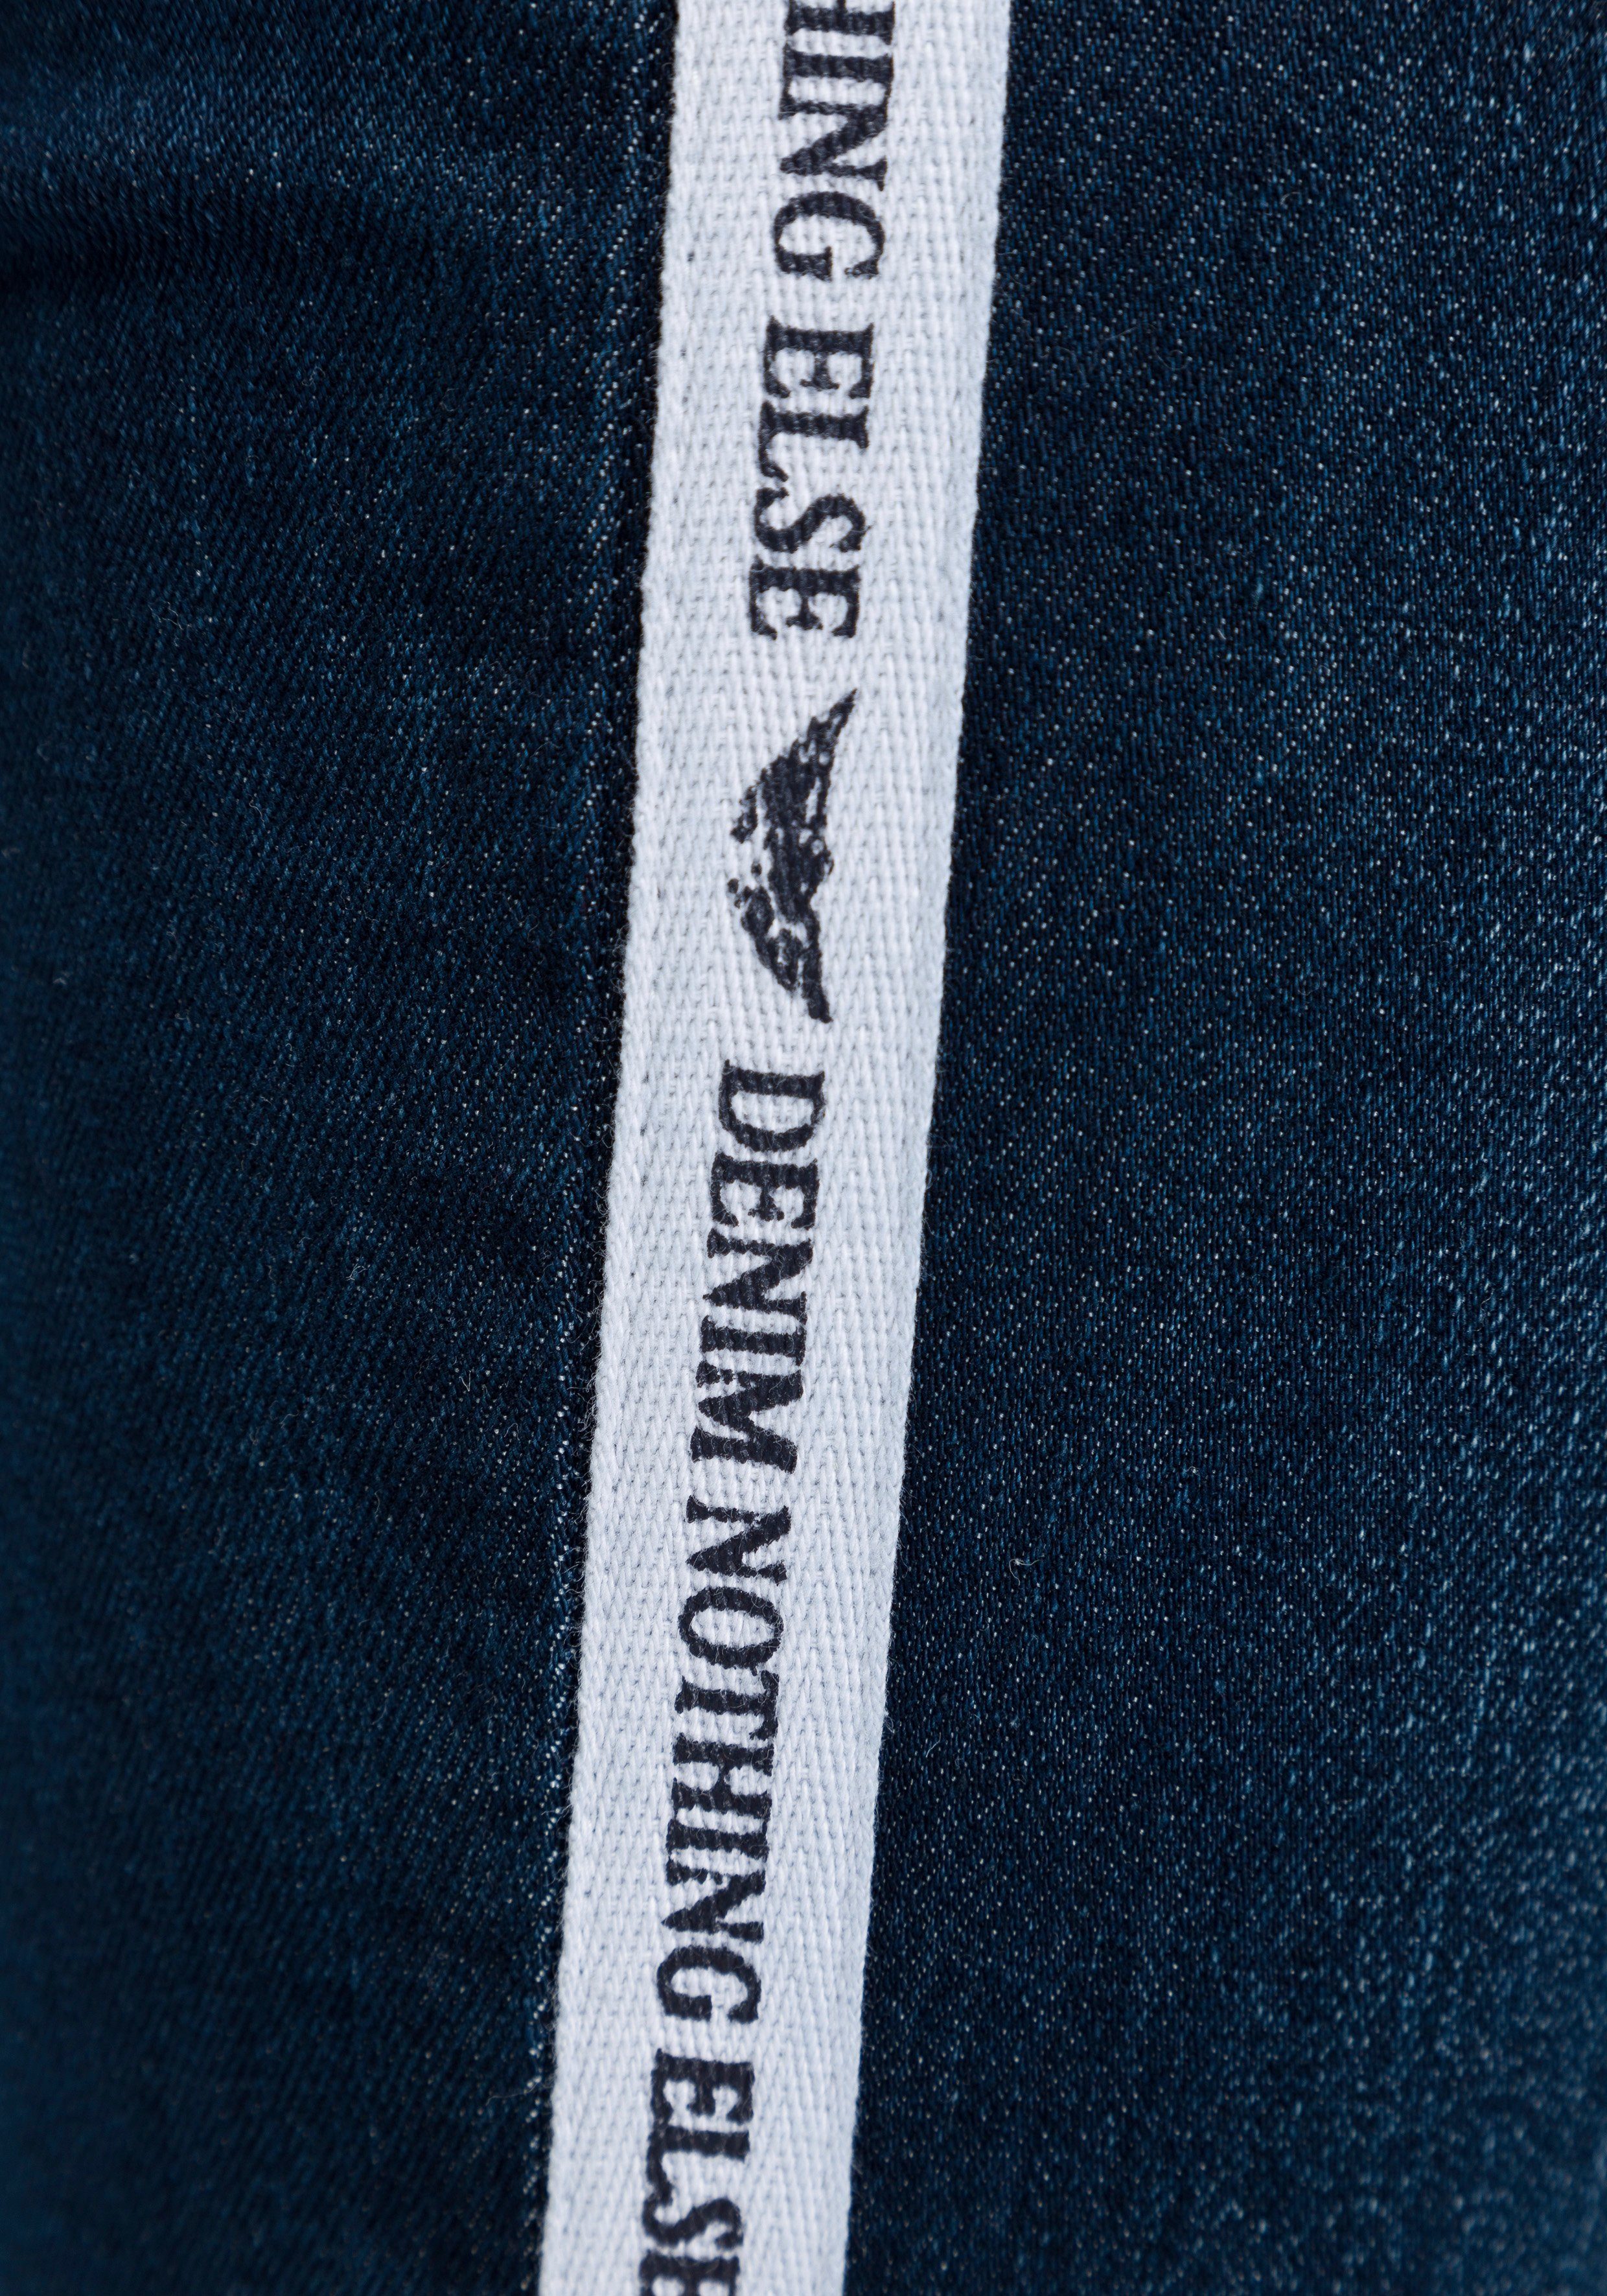 Arizona Slim-fit-Jeans High Waist coolem mit Seitenstreifen